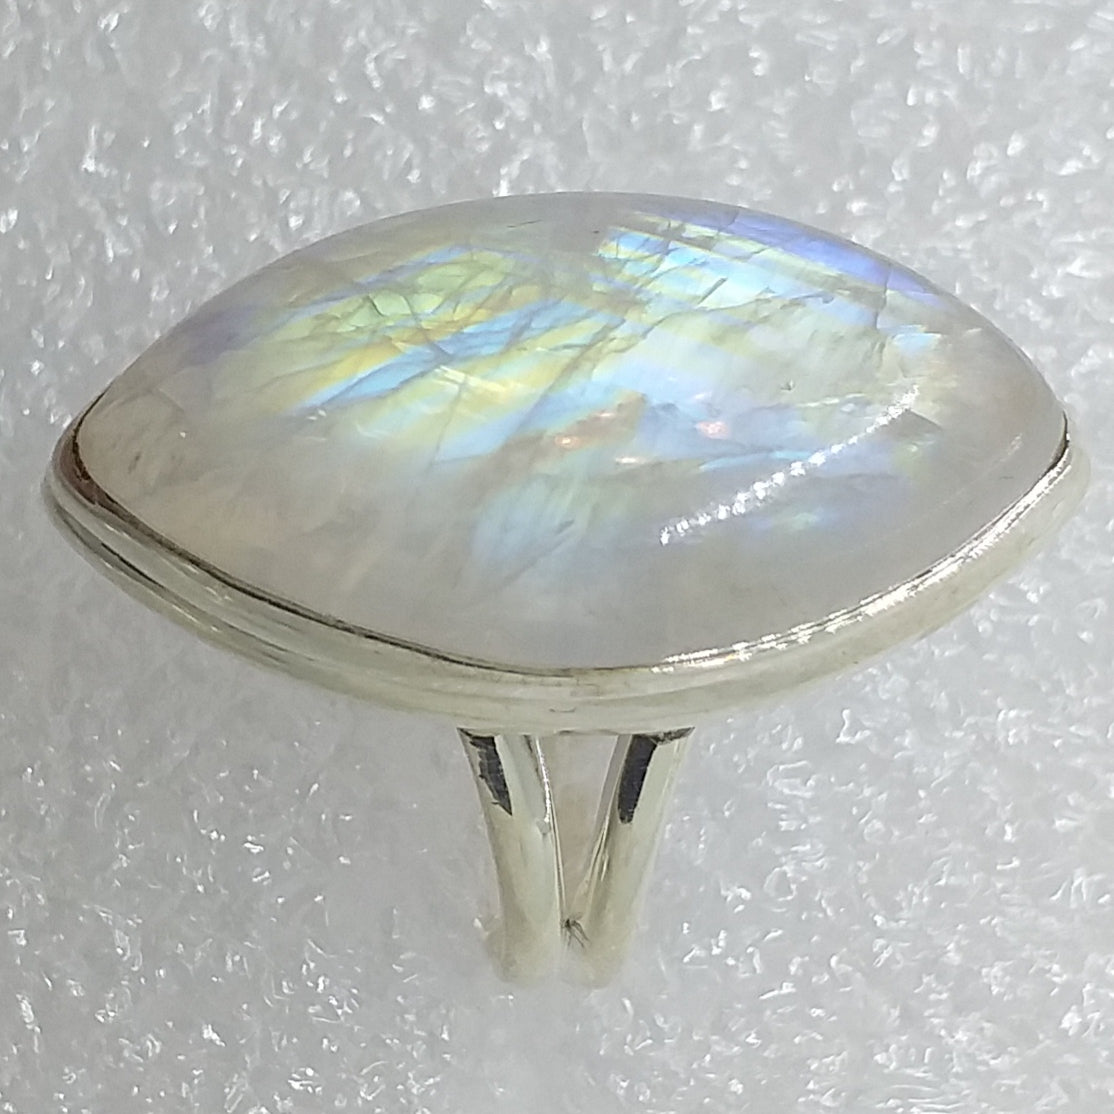 MONDSTEIN Ring Gr. 17,5 925 Silber Regenbogenmondstein riesig